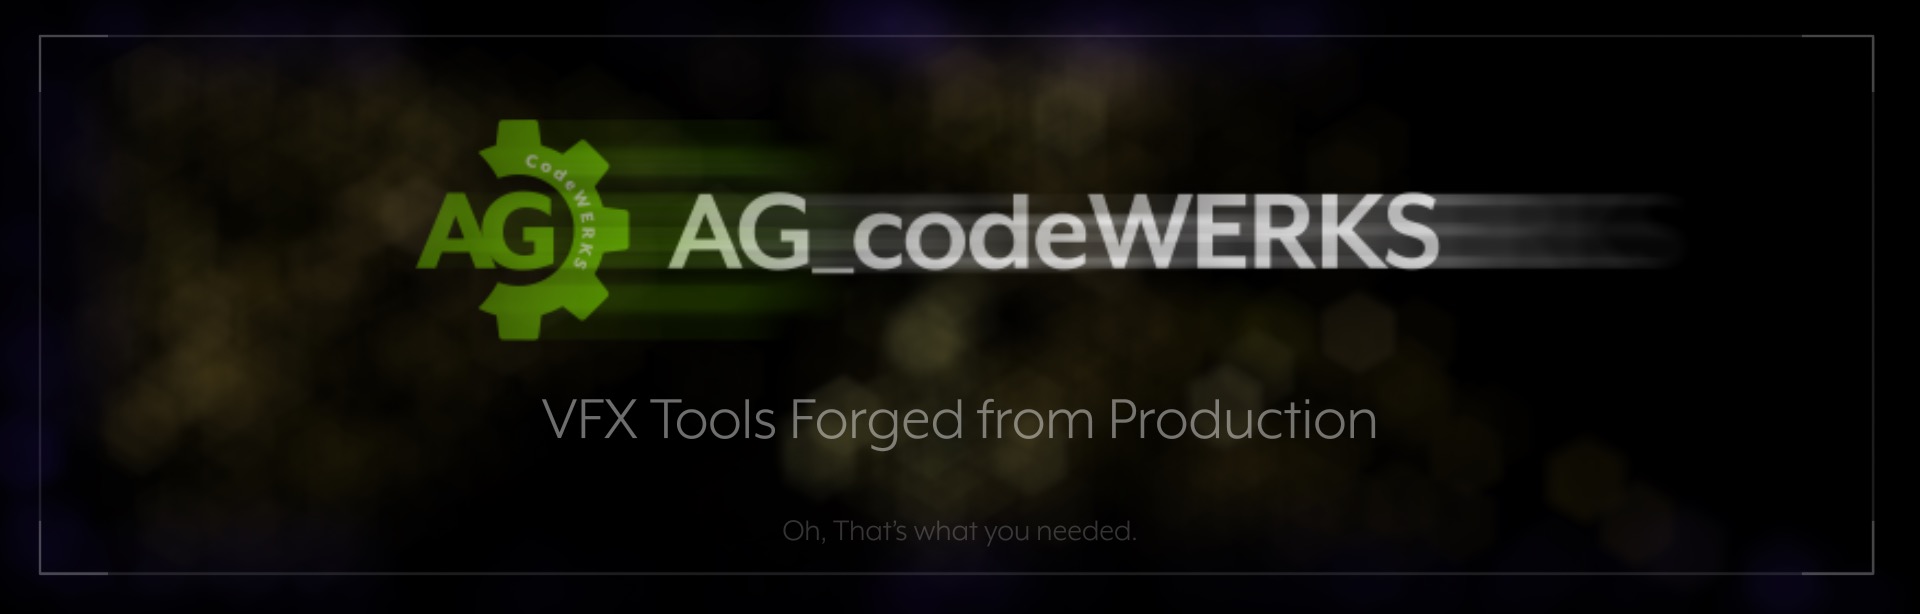 AG_codeWERKS